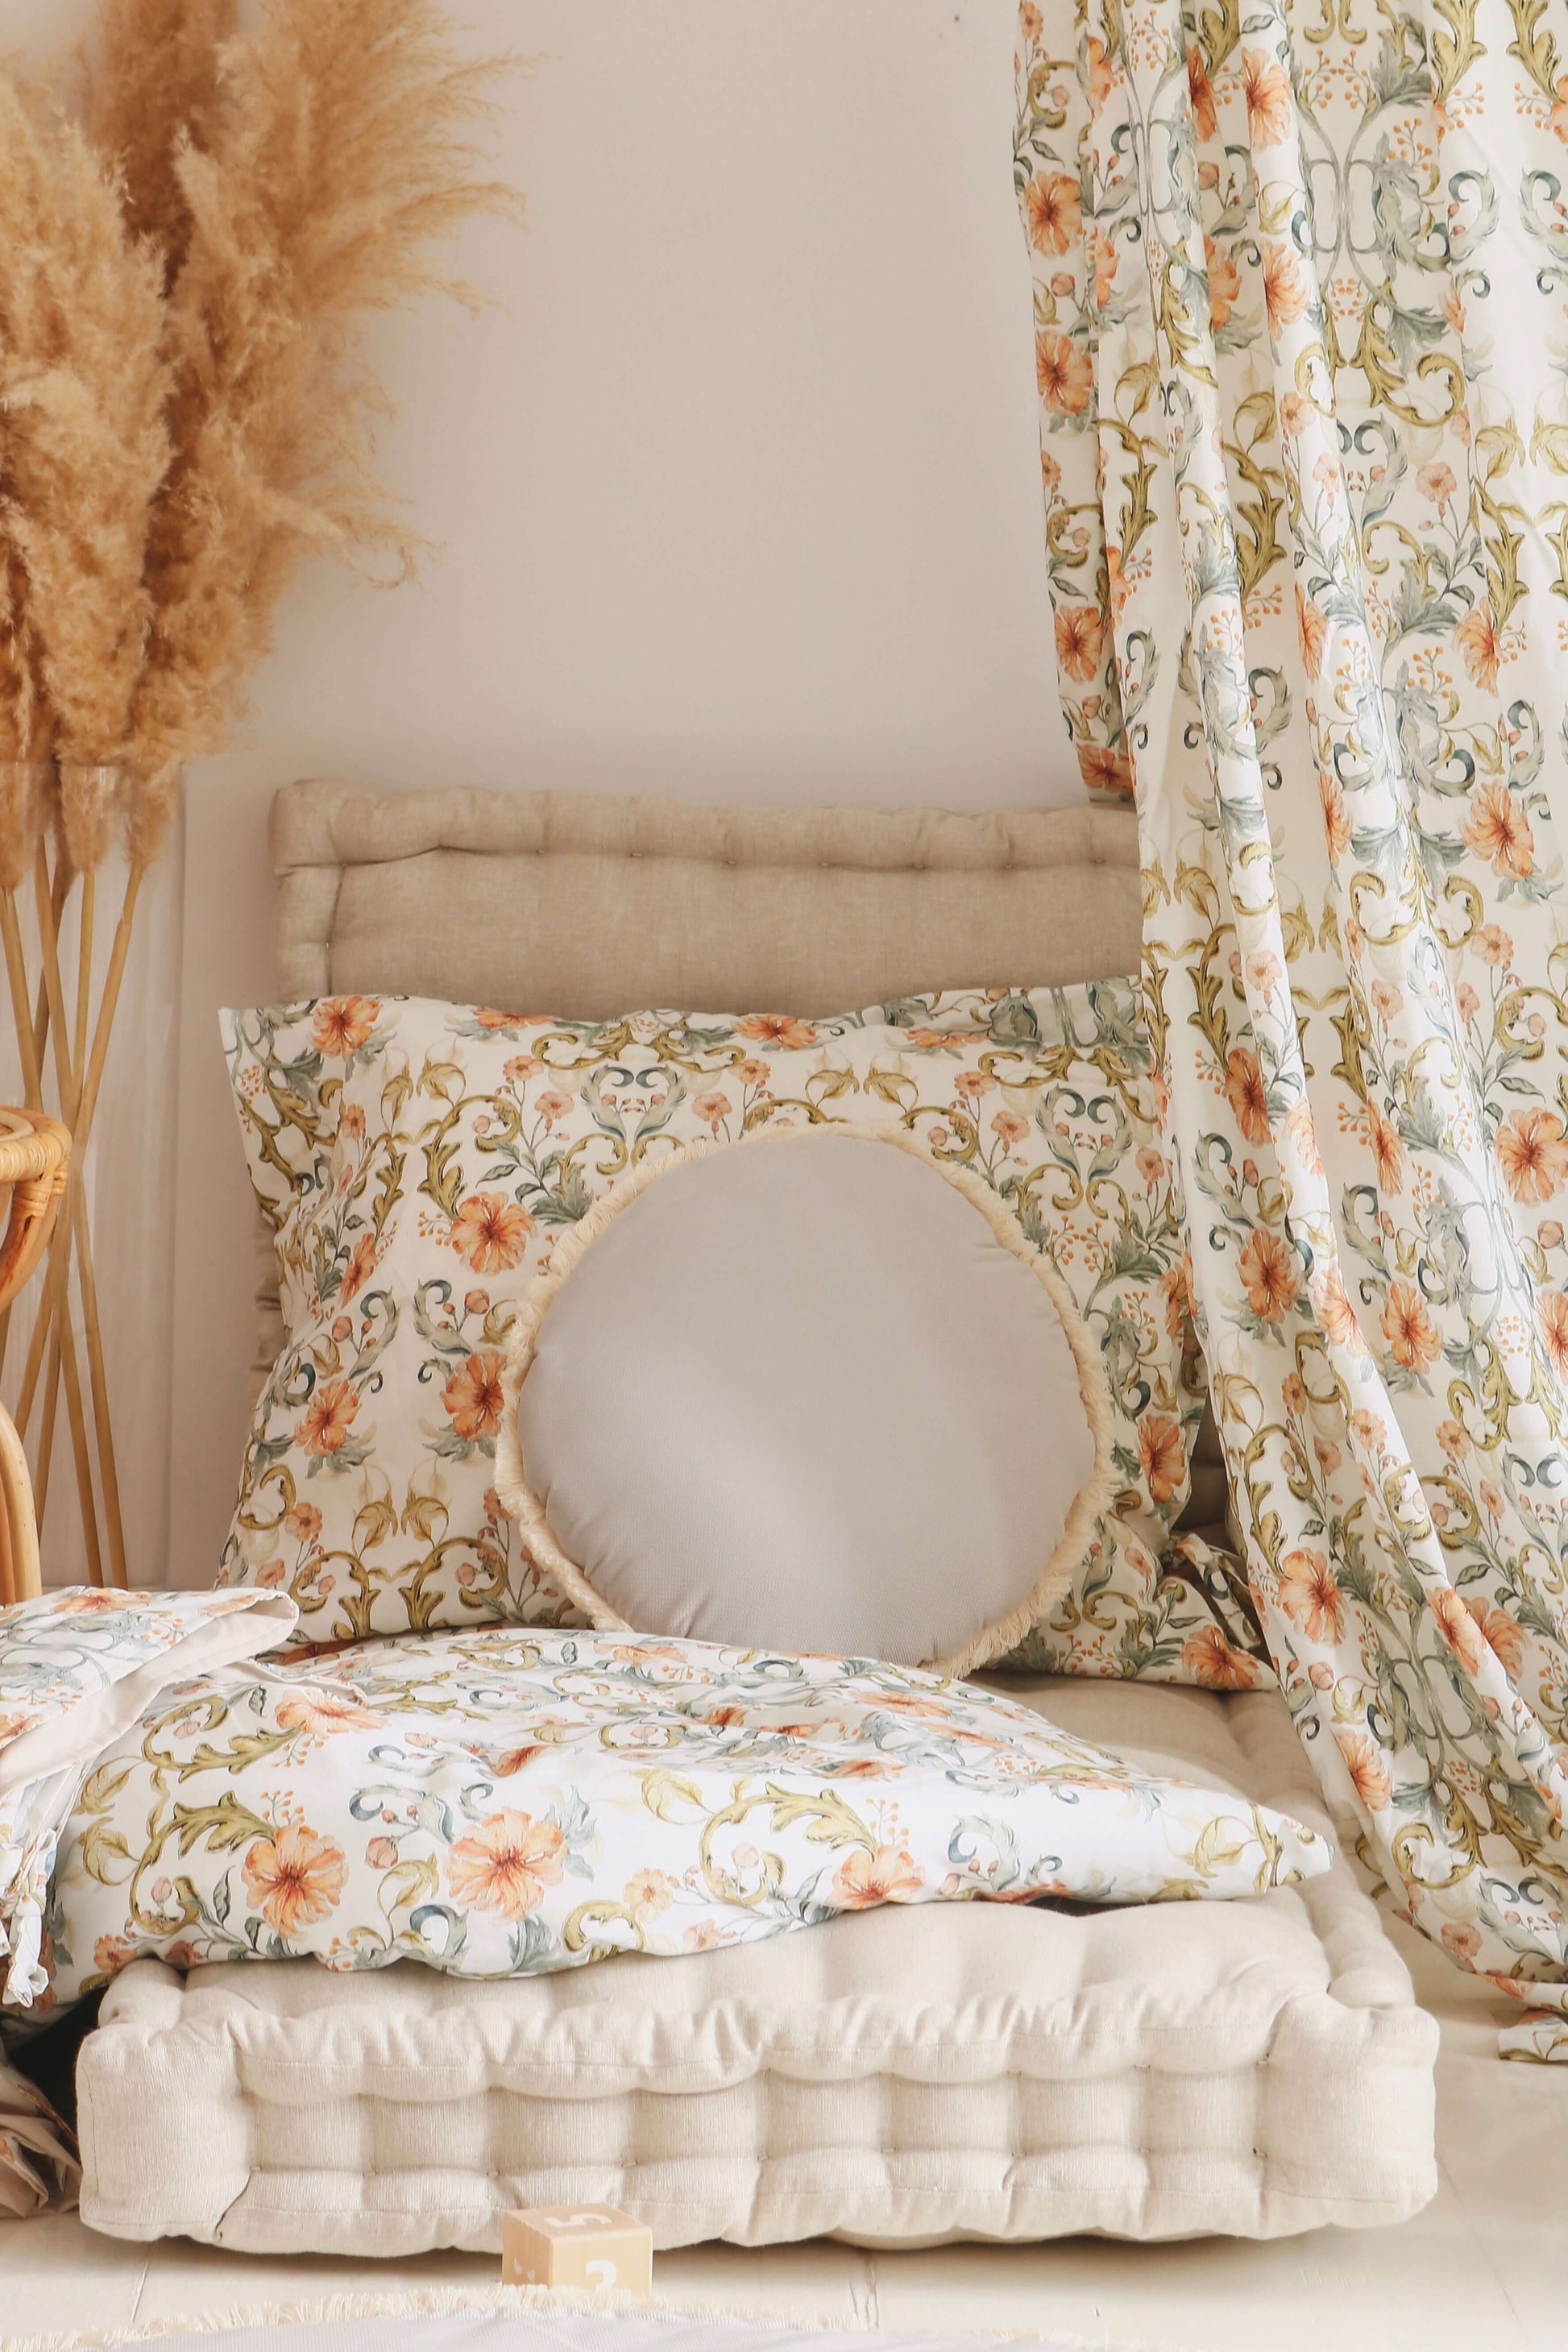 Matuu - Tangled  flowers - bedding set, duvet cover, case pillow